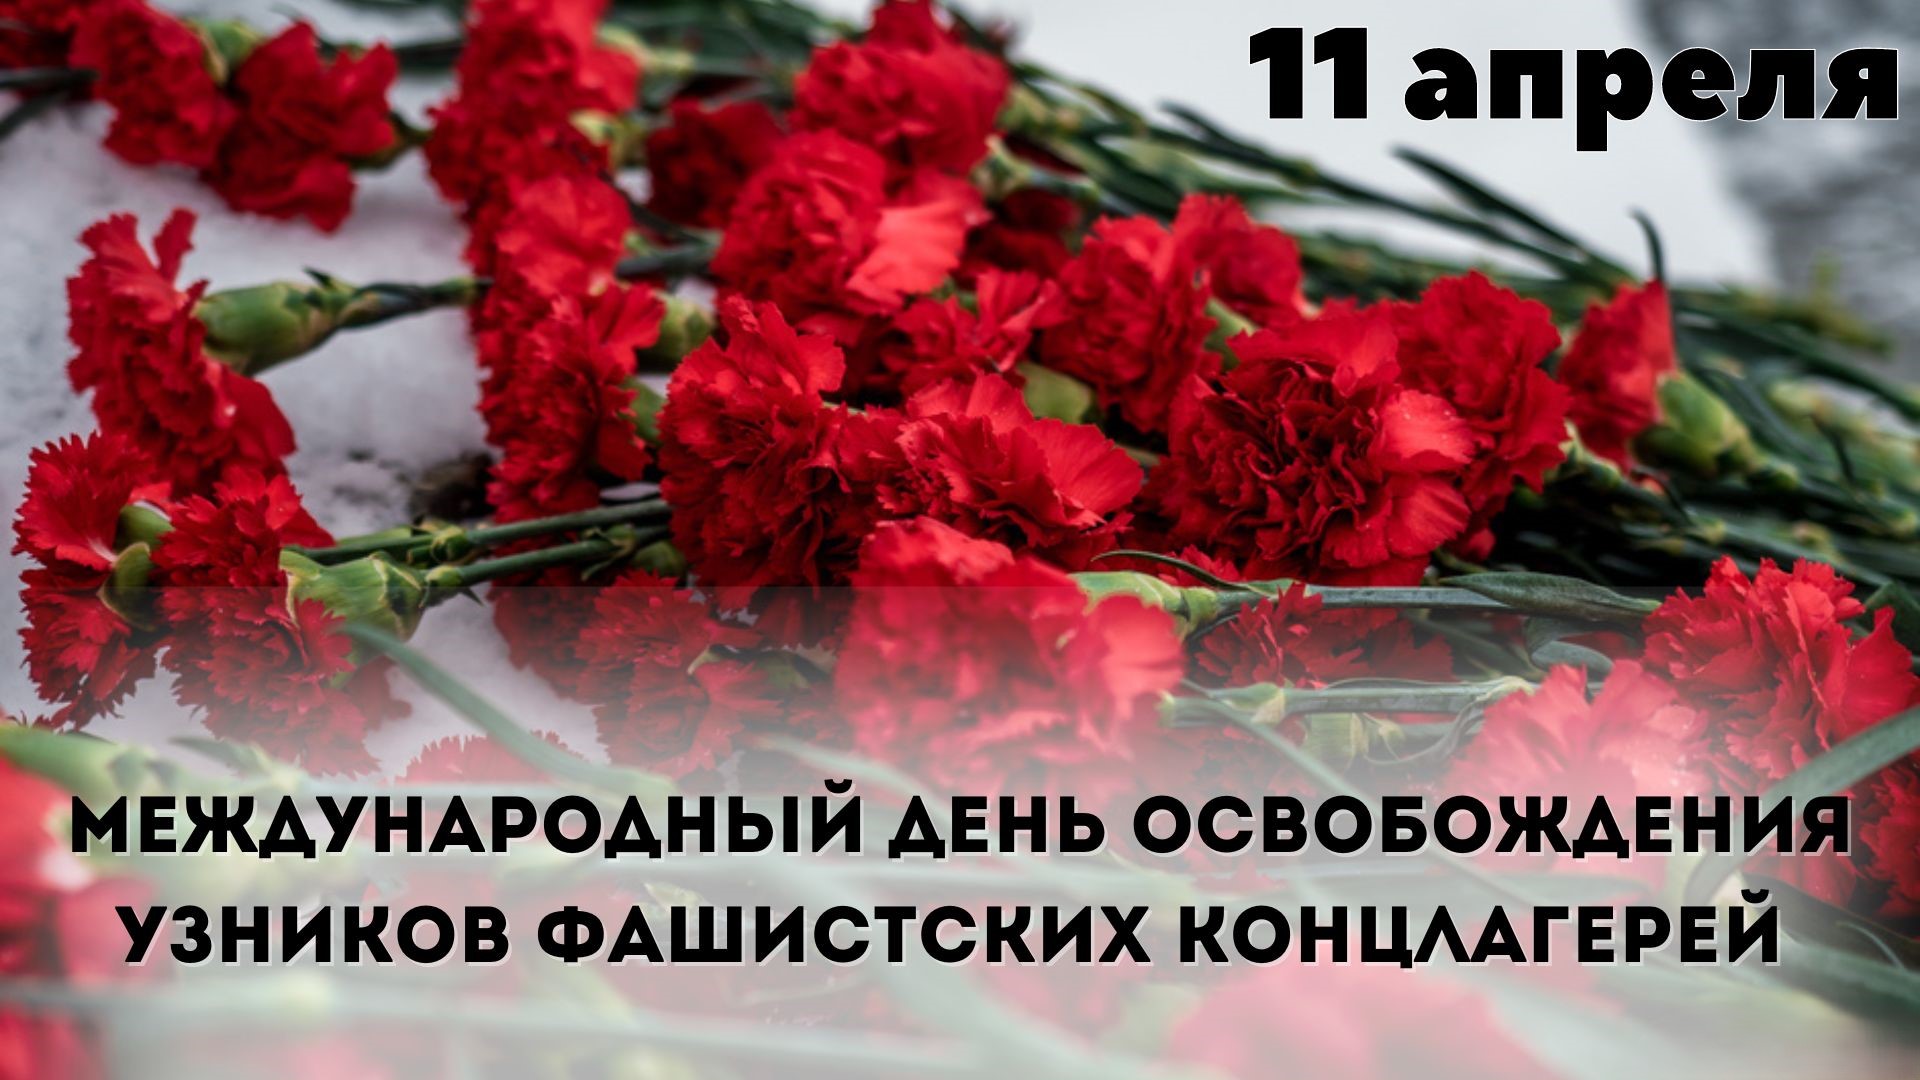 11 апреля международный день памяти узников концлагерей